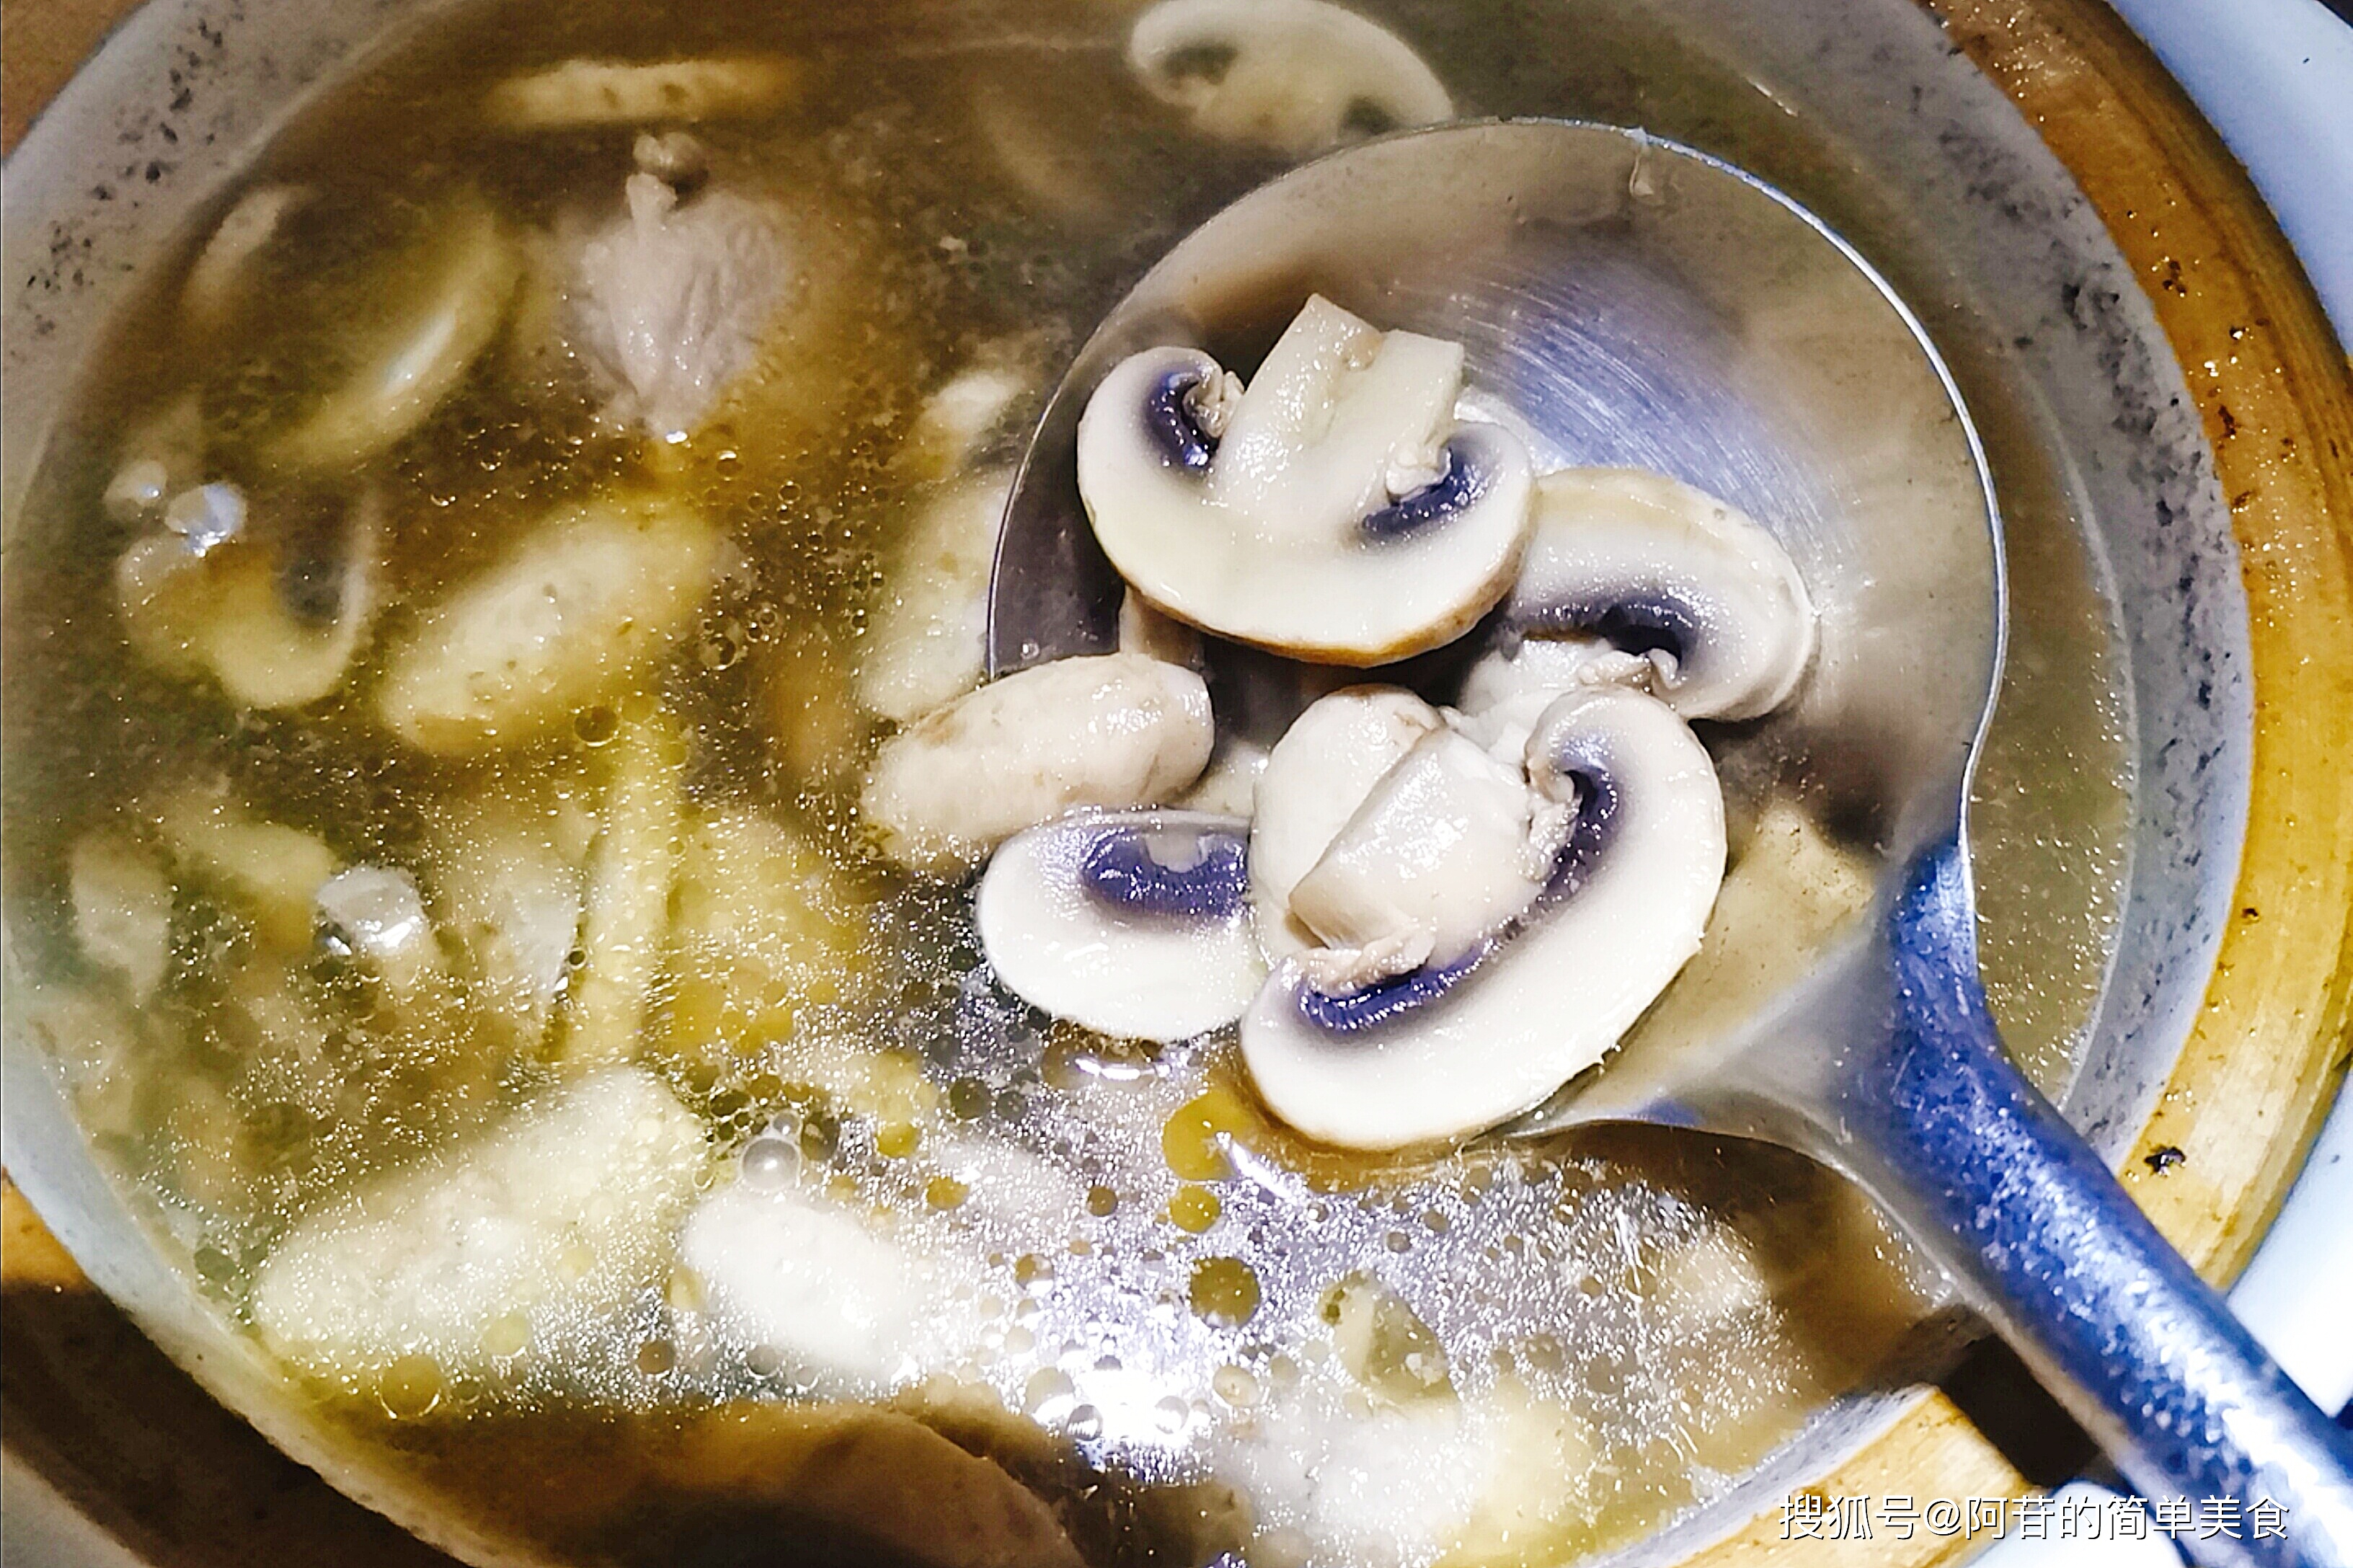 超级鲜美的口蘑骨头汤,用料简单,做法简单,简单成就美味